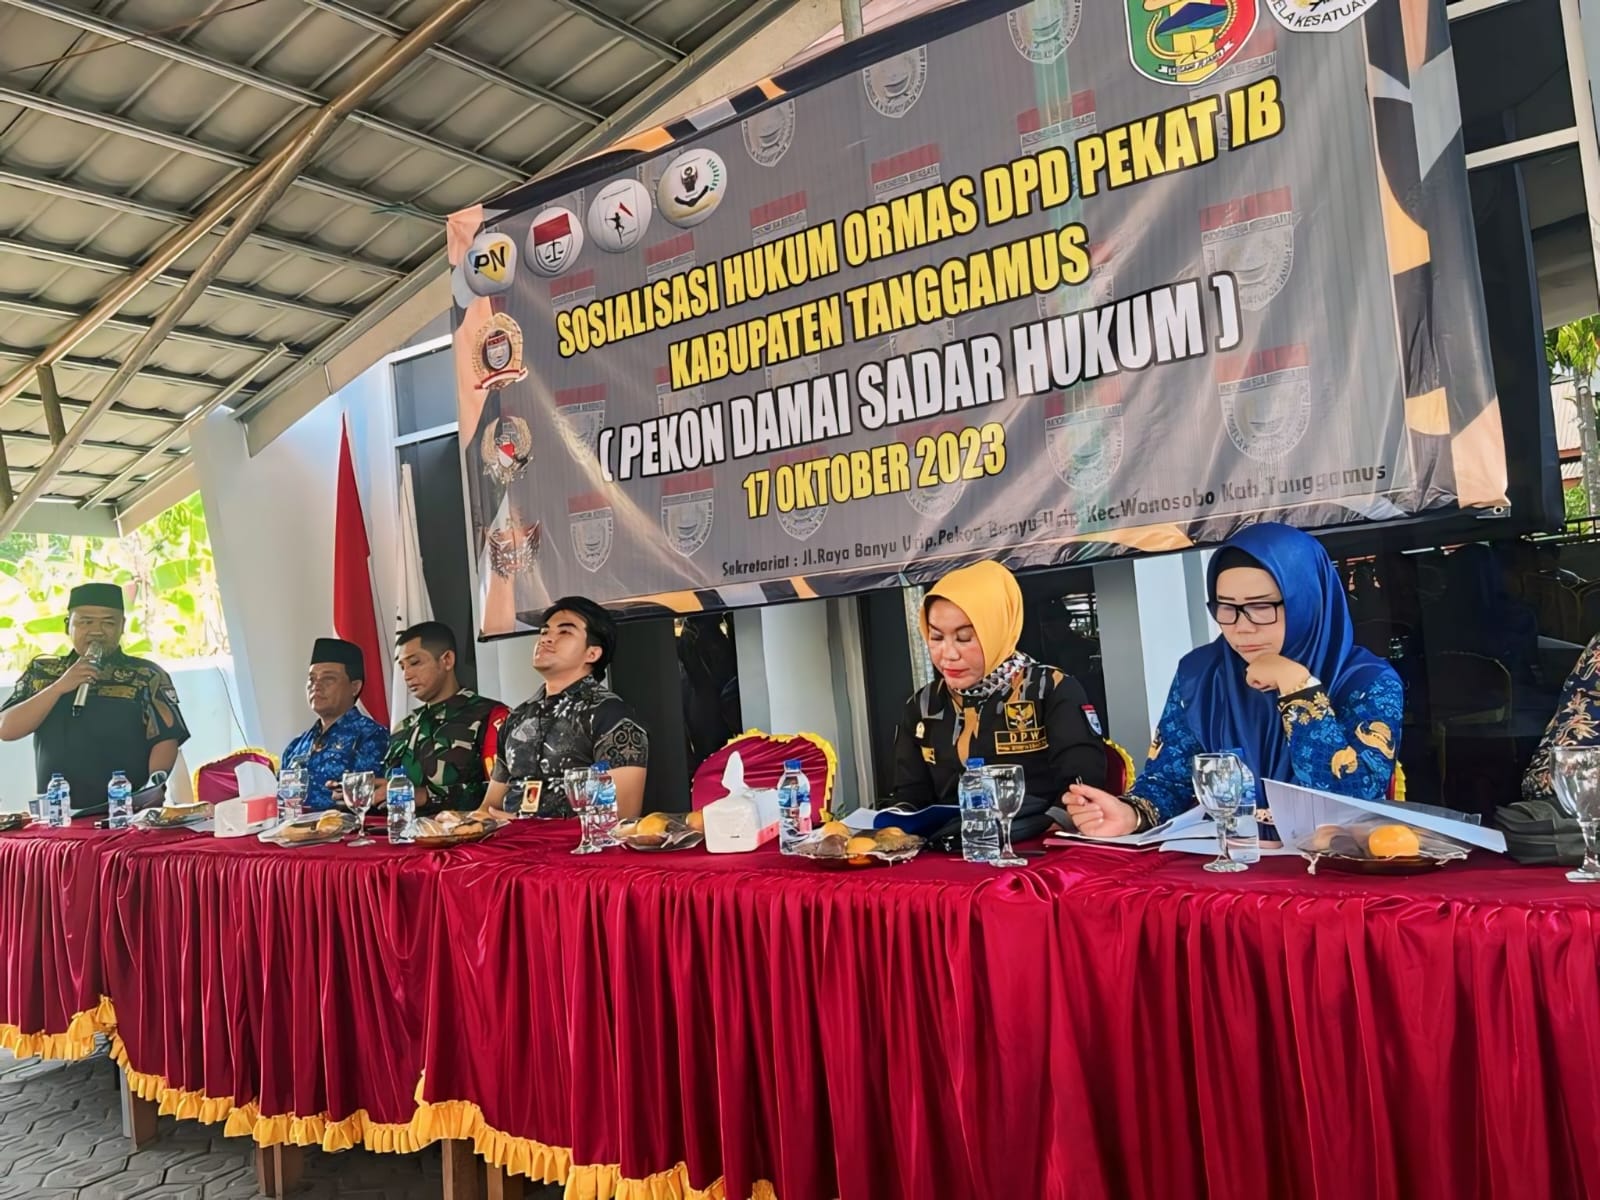 Tawuran Pelajar Menjemput Ajal. Ketua PEKAT-IB Lampung : Fenomena Memprihatinkan